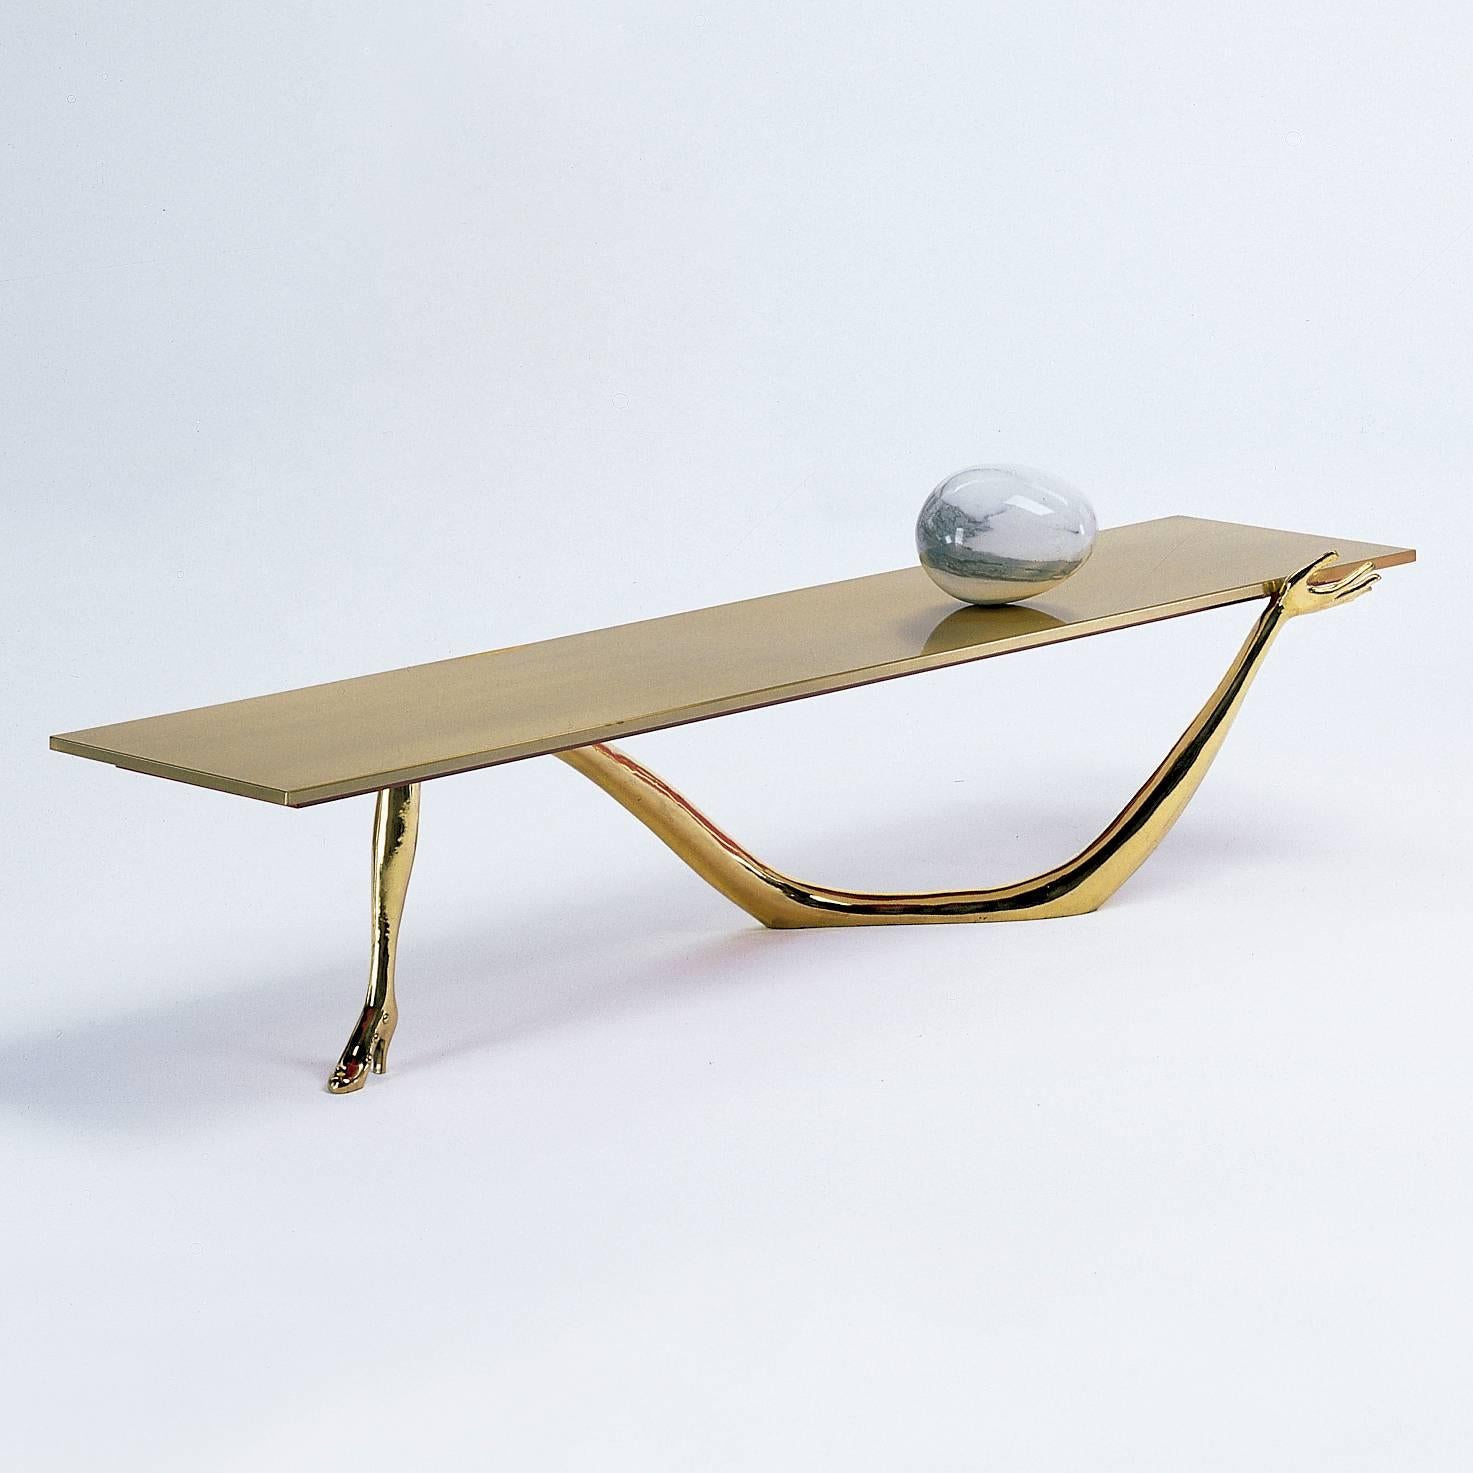 Table basse Leda conçue par Dali et fabriquée par BD.

Les pieds sont en laiton coulé verni.
Plateau en laiton brossé et verni.
Œuf en marbre de Carrare sur le dessus.

Mesures : 51 x 190 x 61 H.cm

Dans les années 30, à Paris, Salvador Dalí